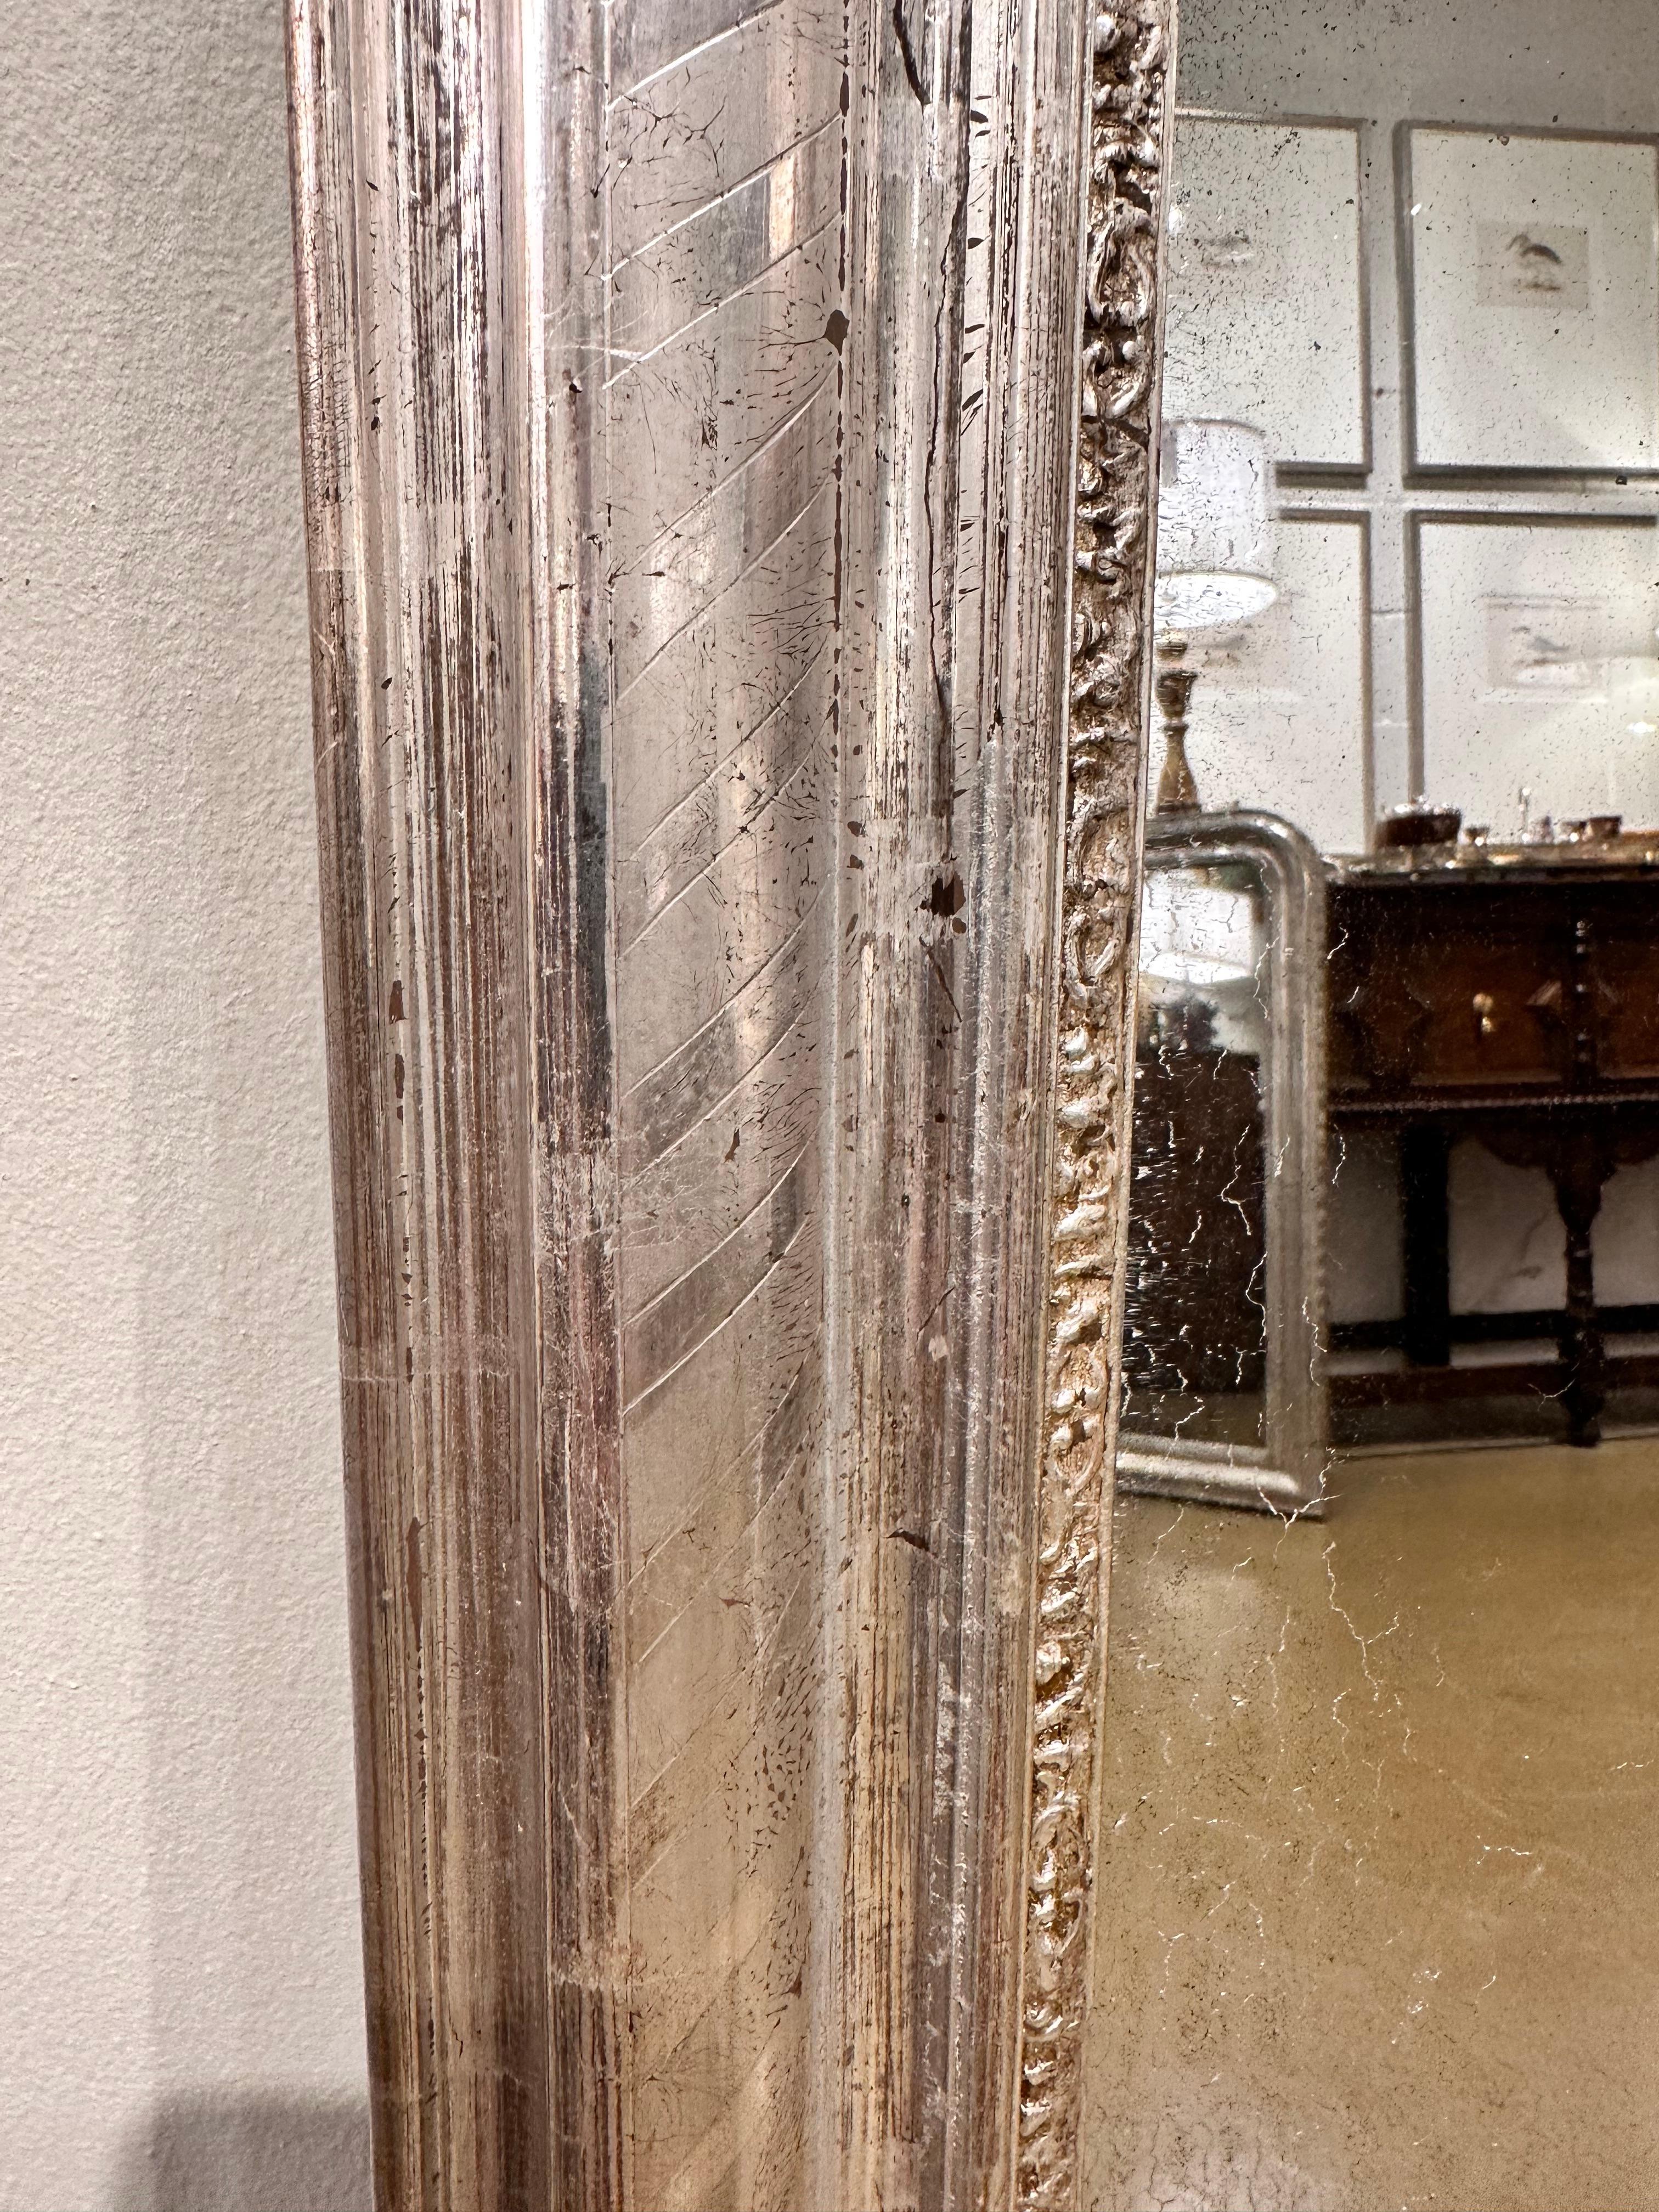 Dies ist eine schöne antike Silber Louis Philippe Spiegel. Ich bin von jedem Louis Philippe Spiegel, den ich sehe, erstaunt. Die Details und die Gravur sind einfach unglaublich, und noch erstaunlicher ist, dass ich selten zwei gleiche sehe. #411